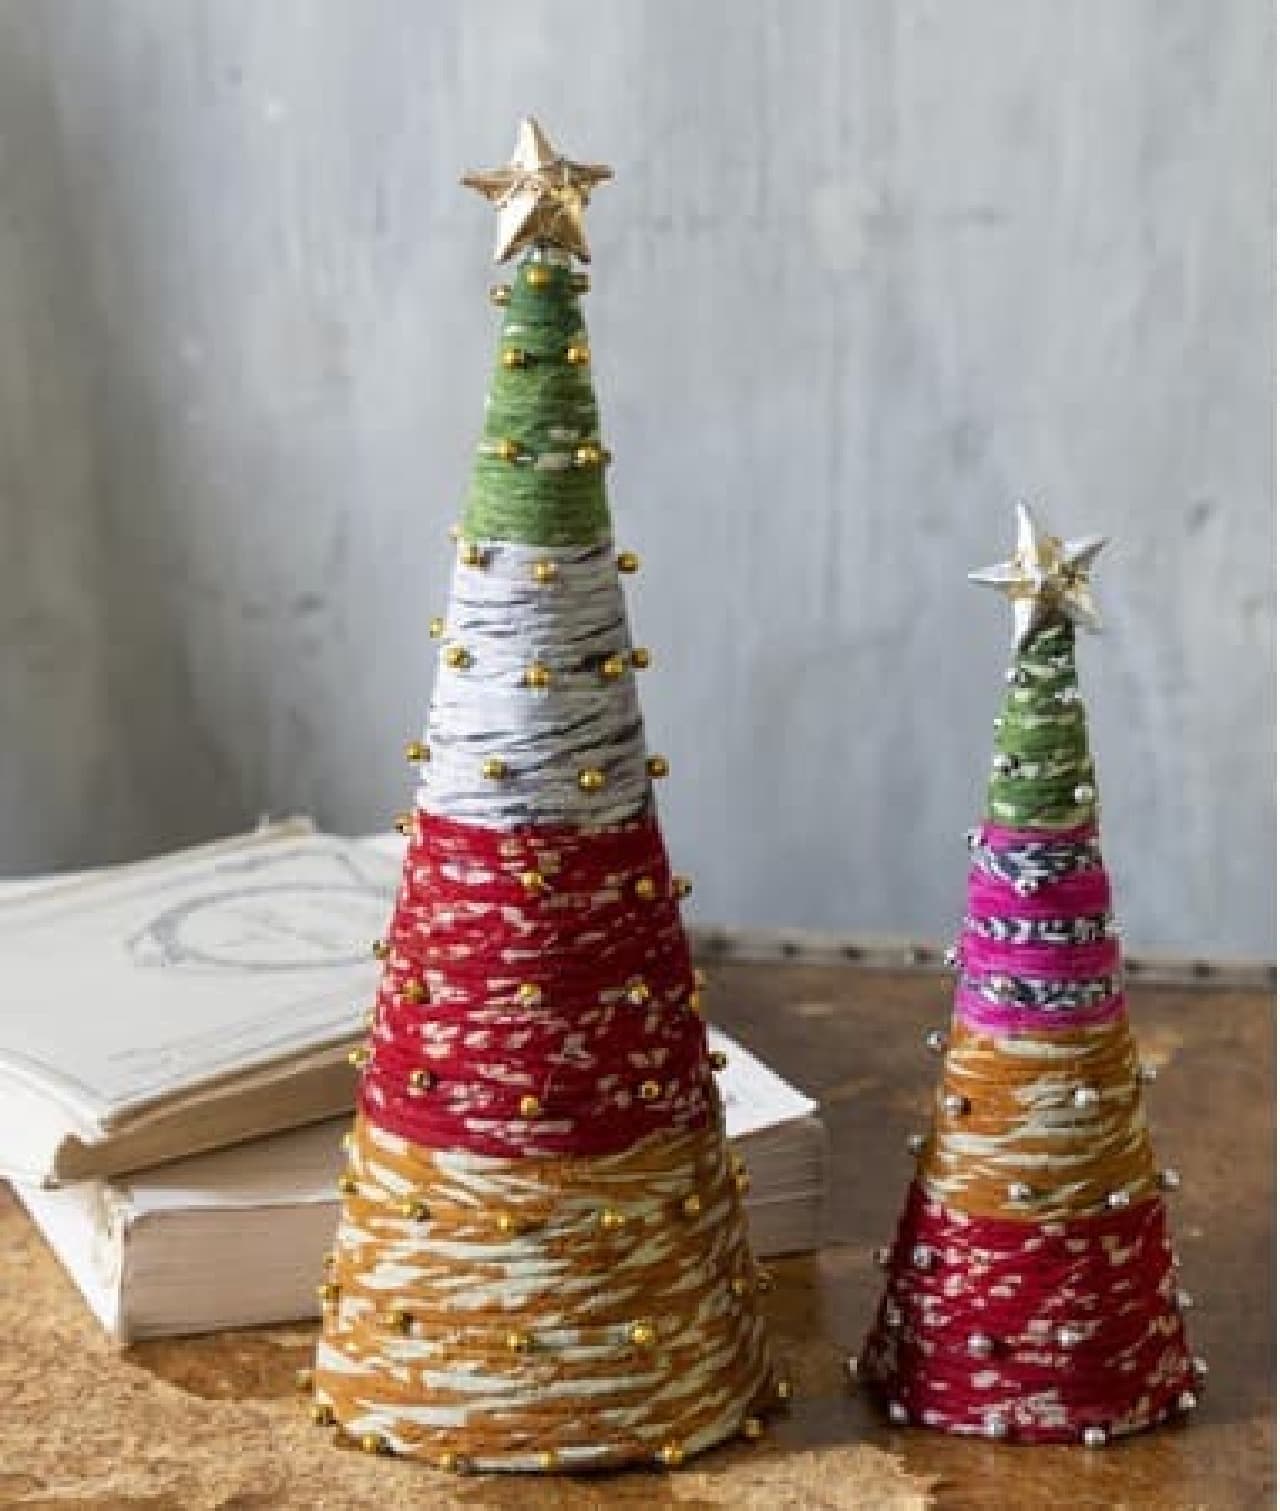 ツリー型バウムクーヘン・チョコレート細工のツリーなど -- ディノスのクリスマス特集サイト